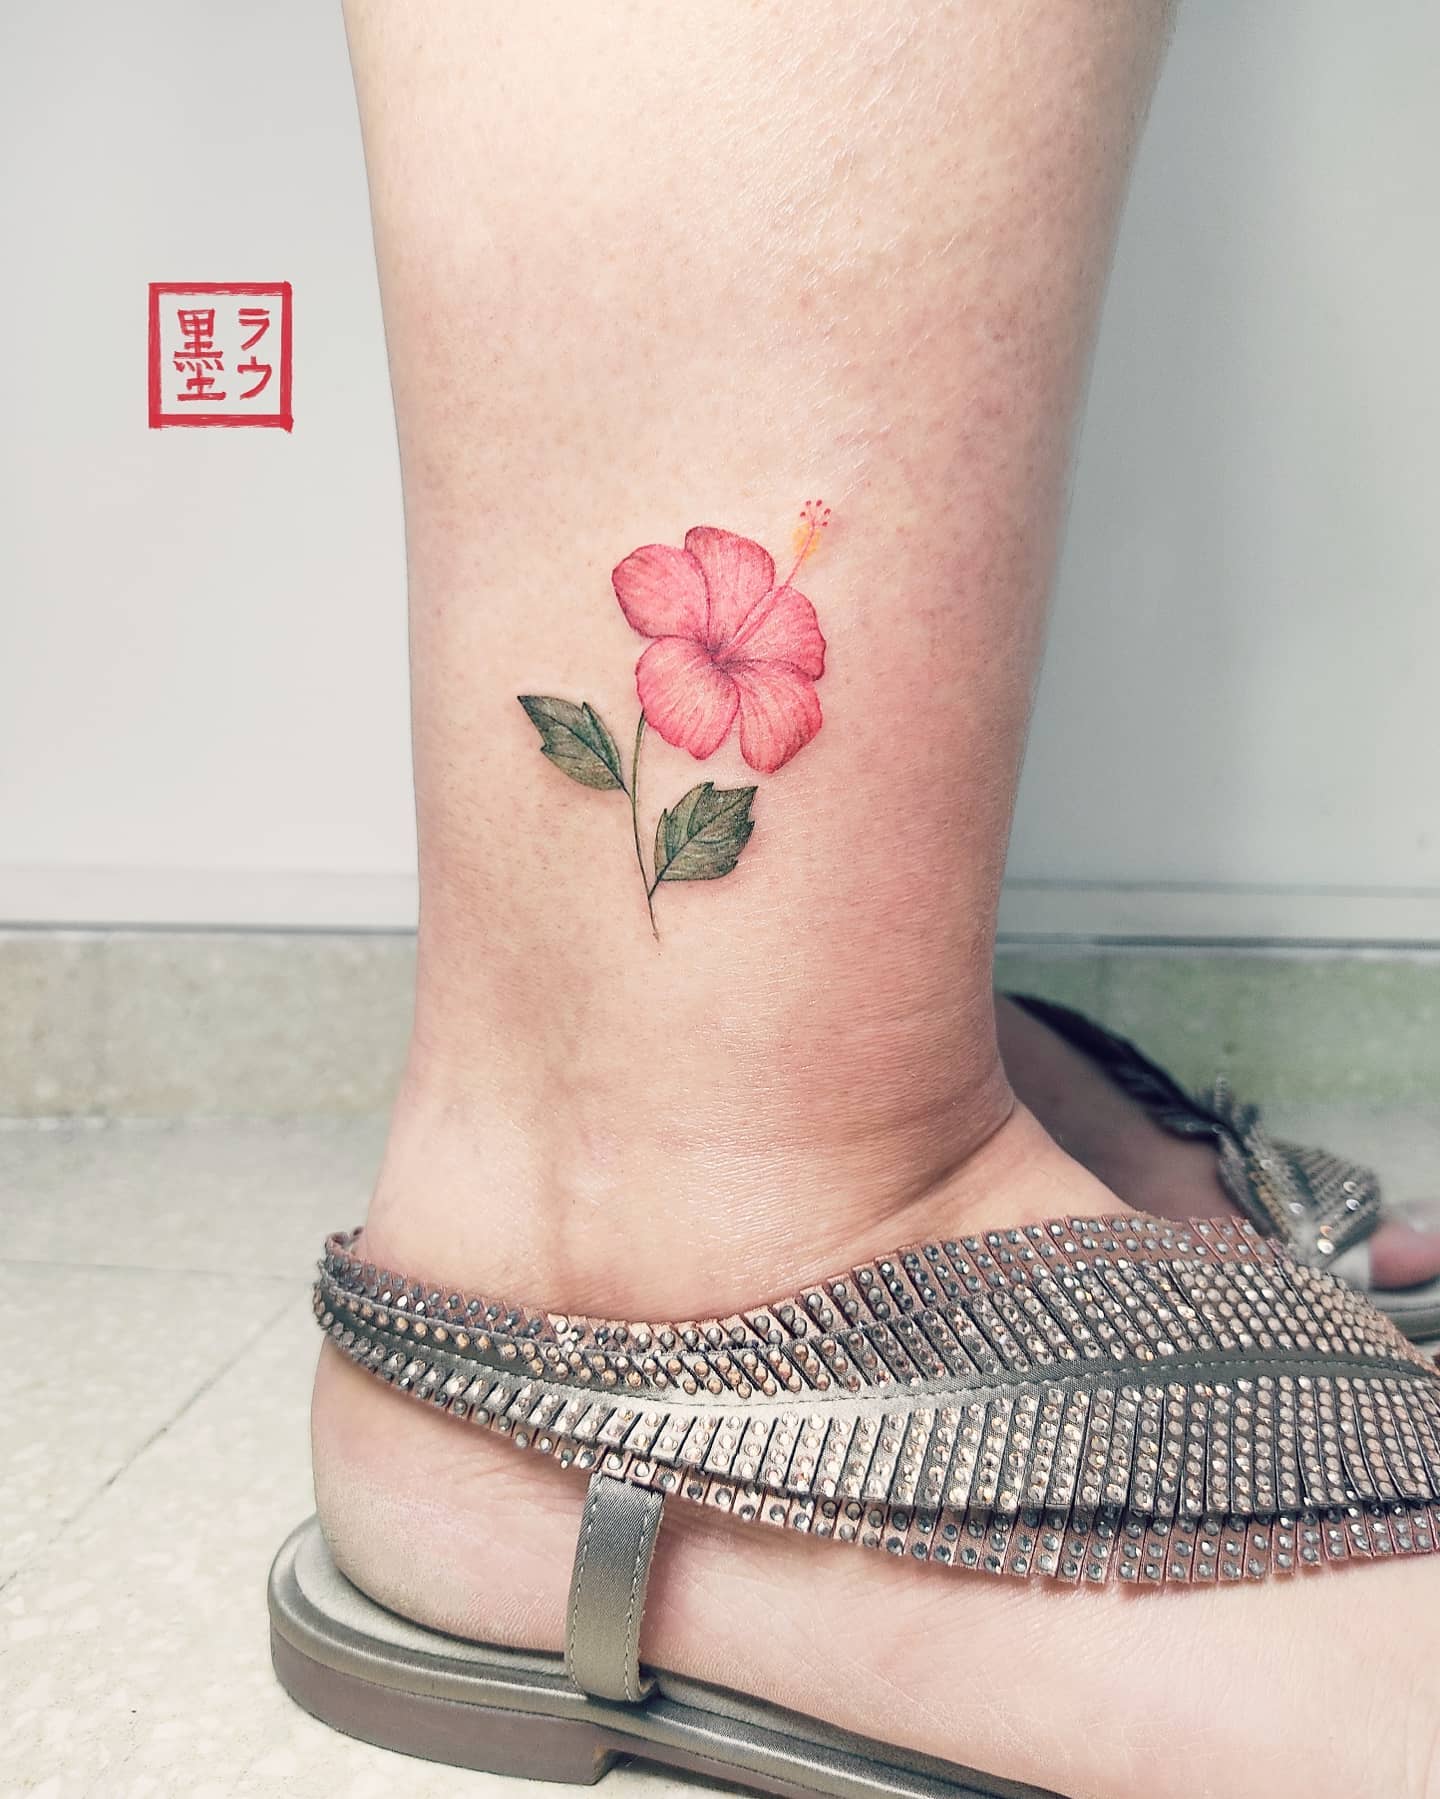 Hawajski tatuaż z małym kwiatkiem na nodze